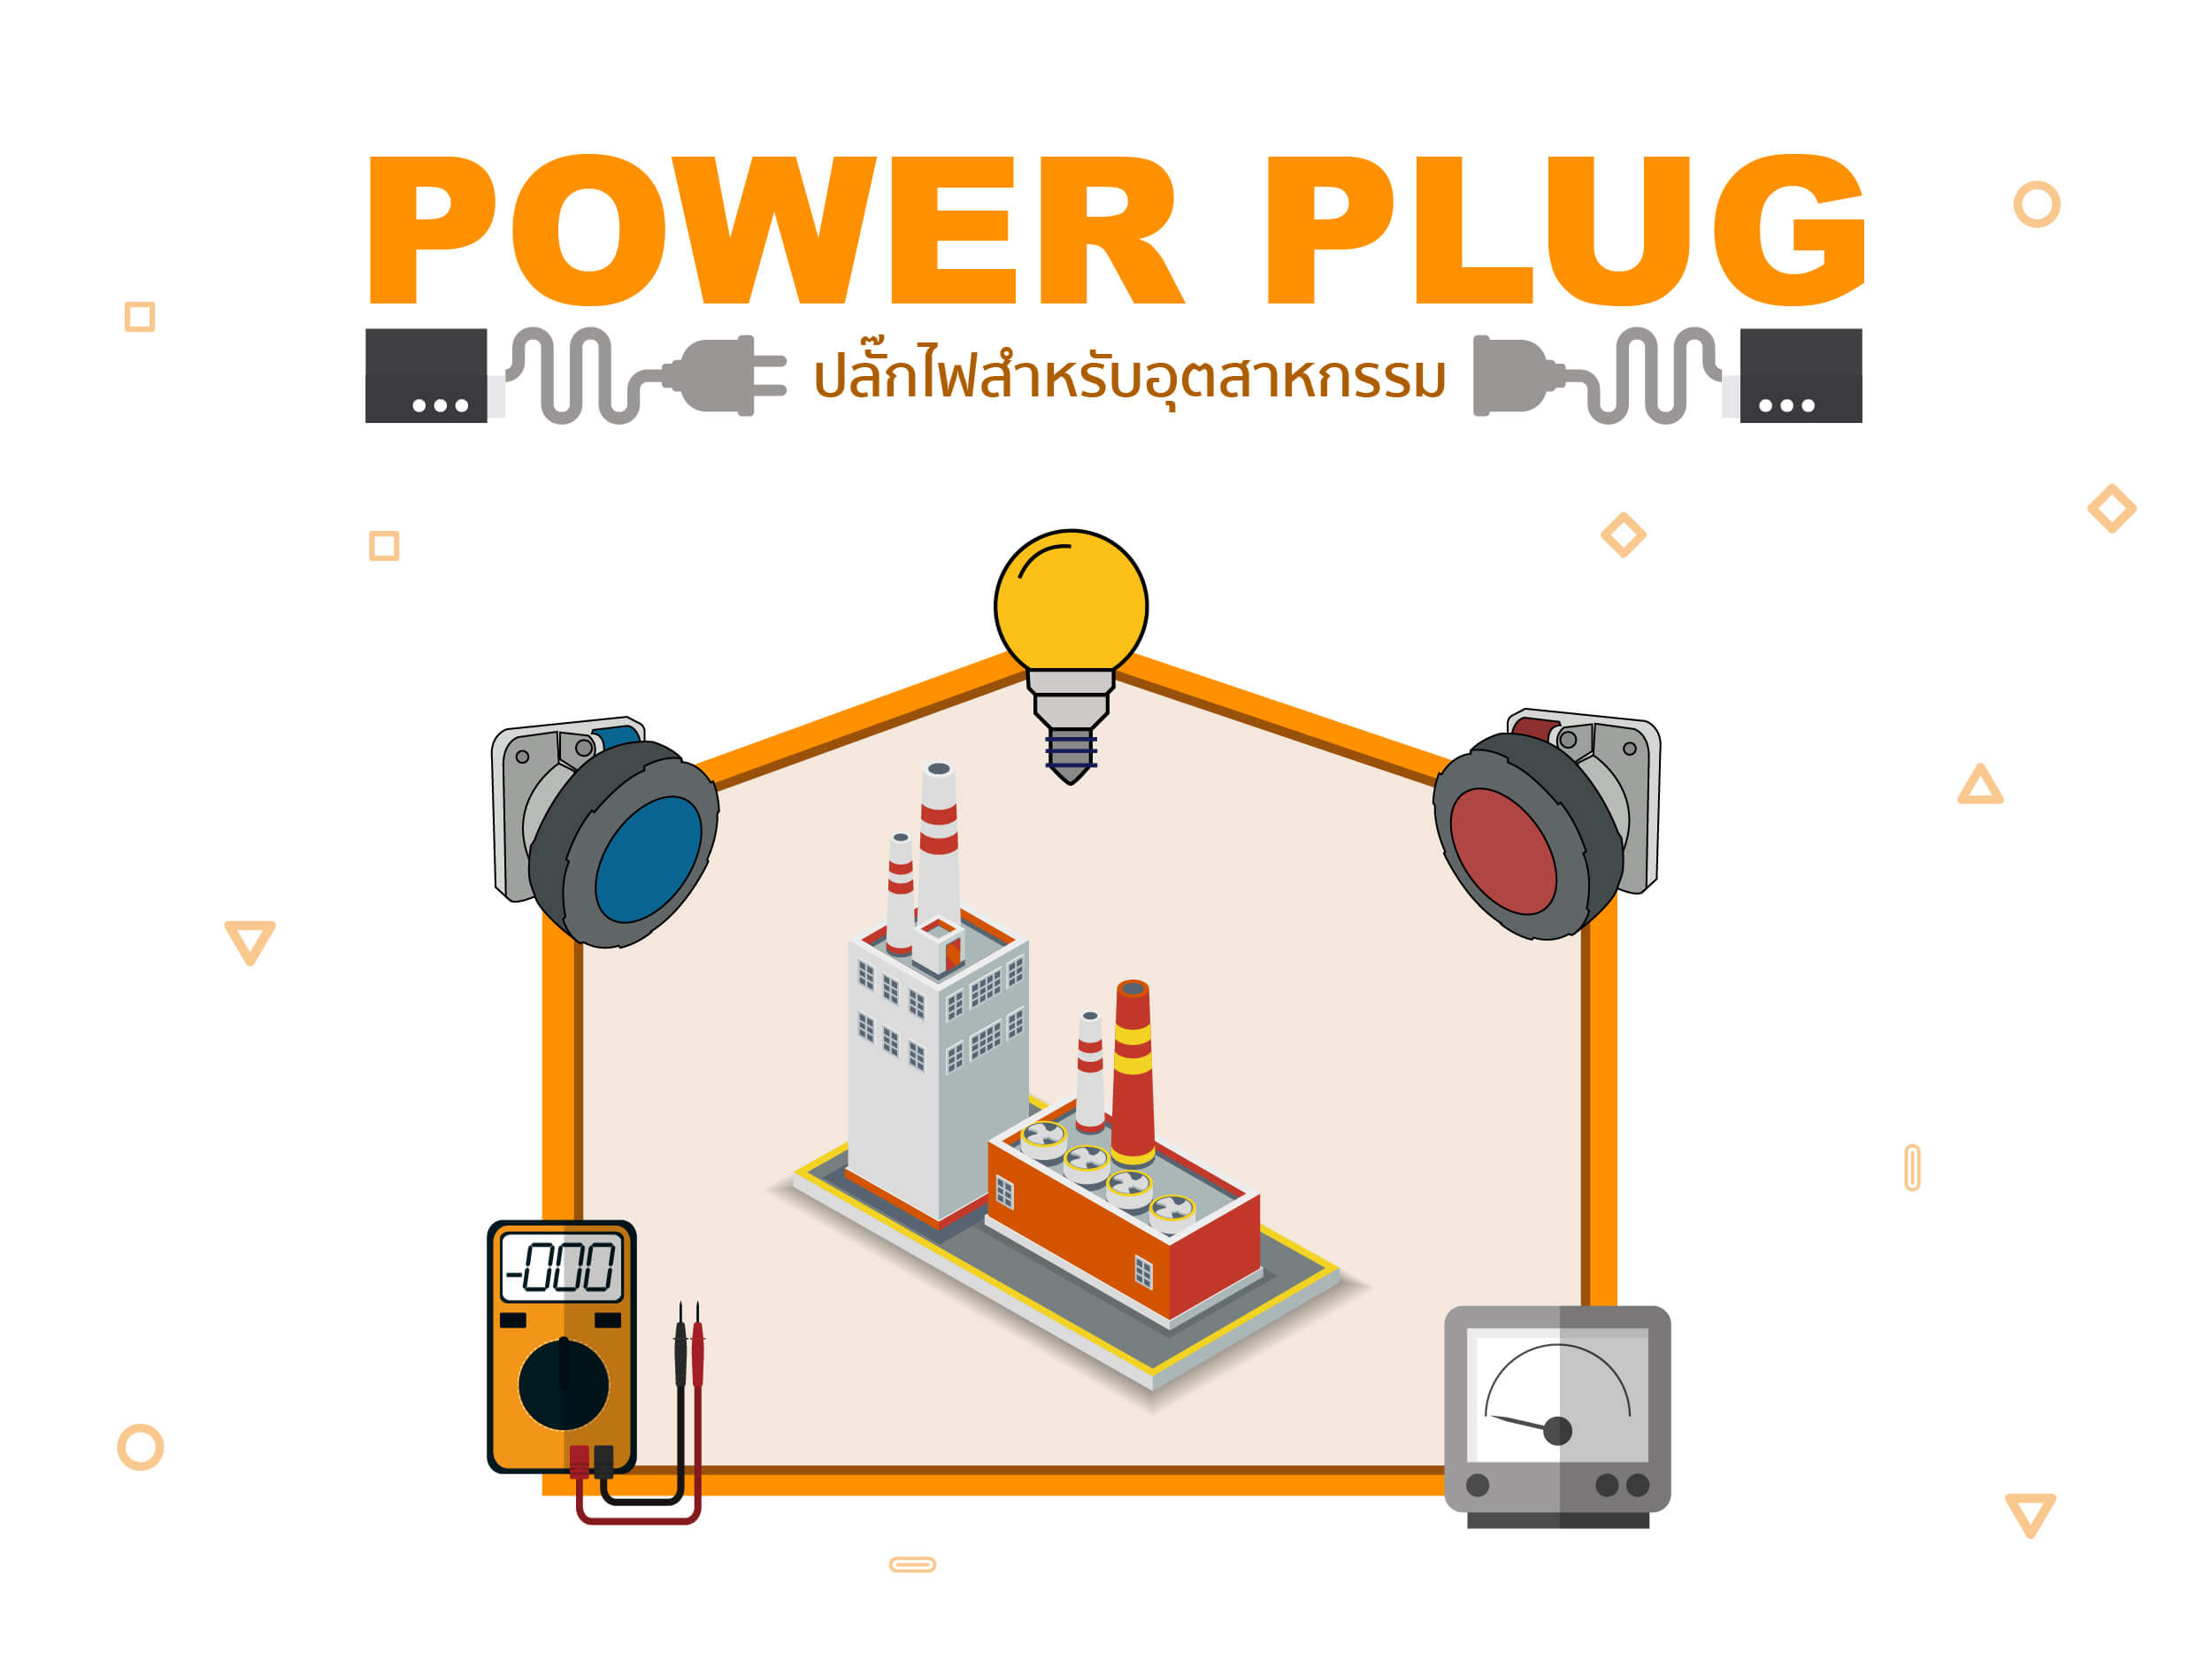 Power Plug ปลั๊กโรงงาน ร้านไฟฟ้าพรแสงชัย